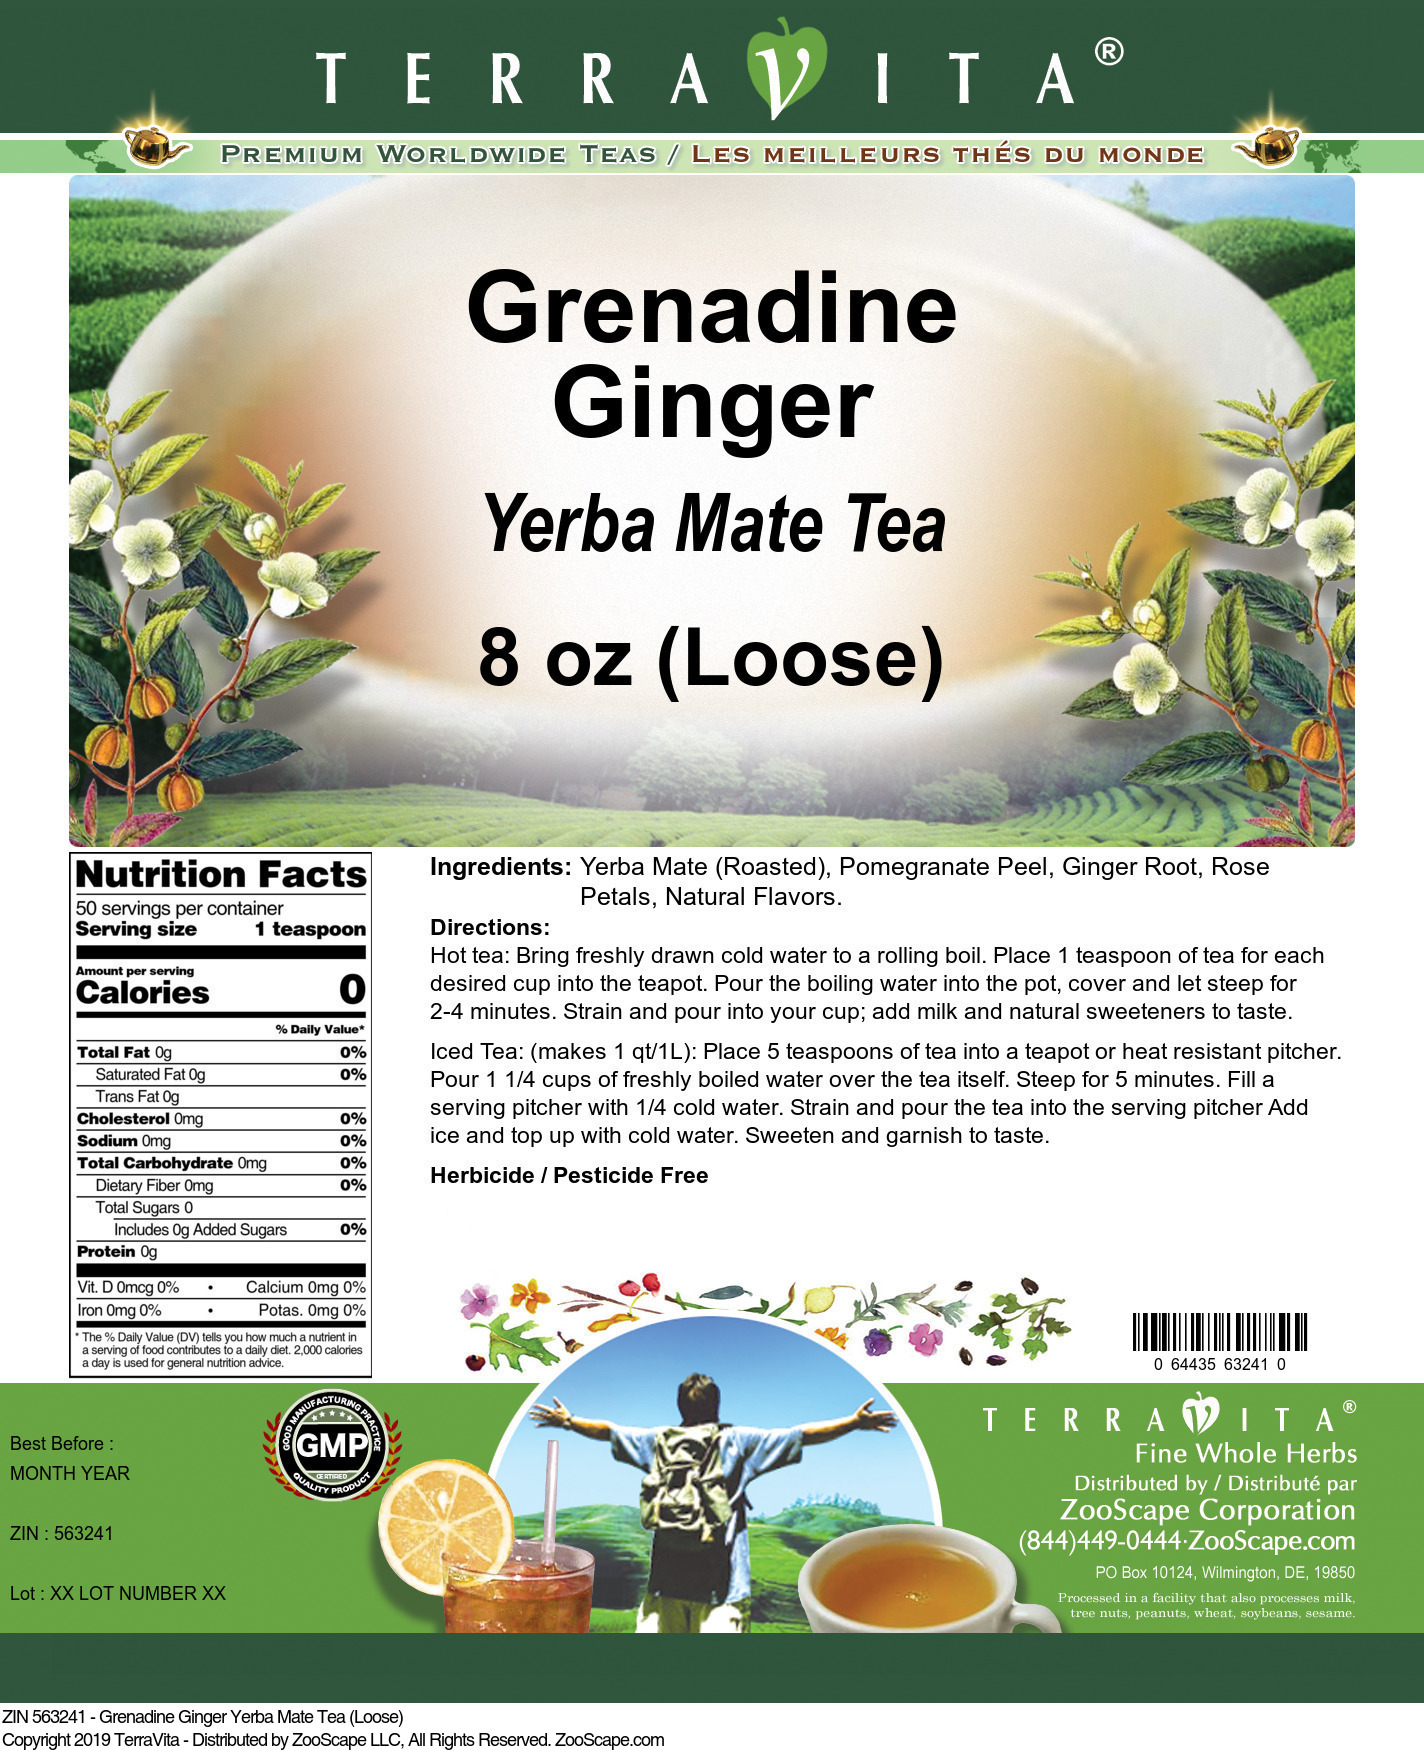 Grenadine Ginger Yerba Mate Tea (Loose) - Label